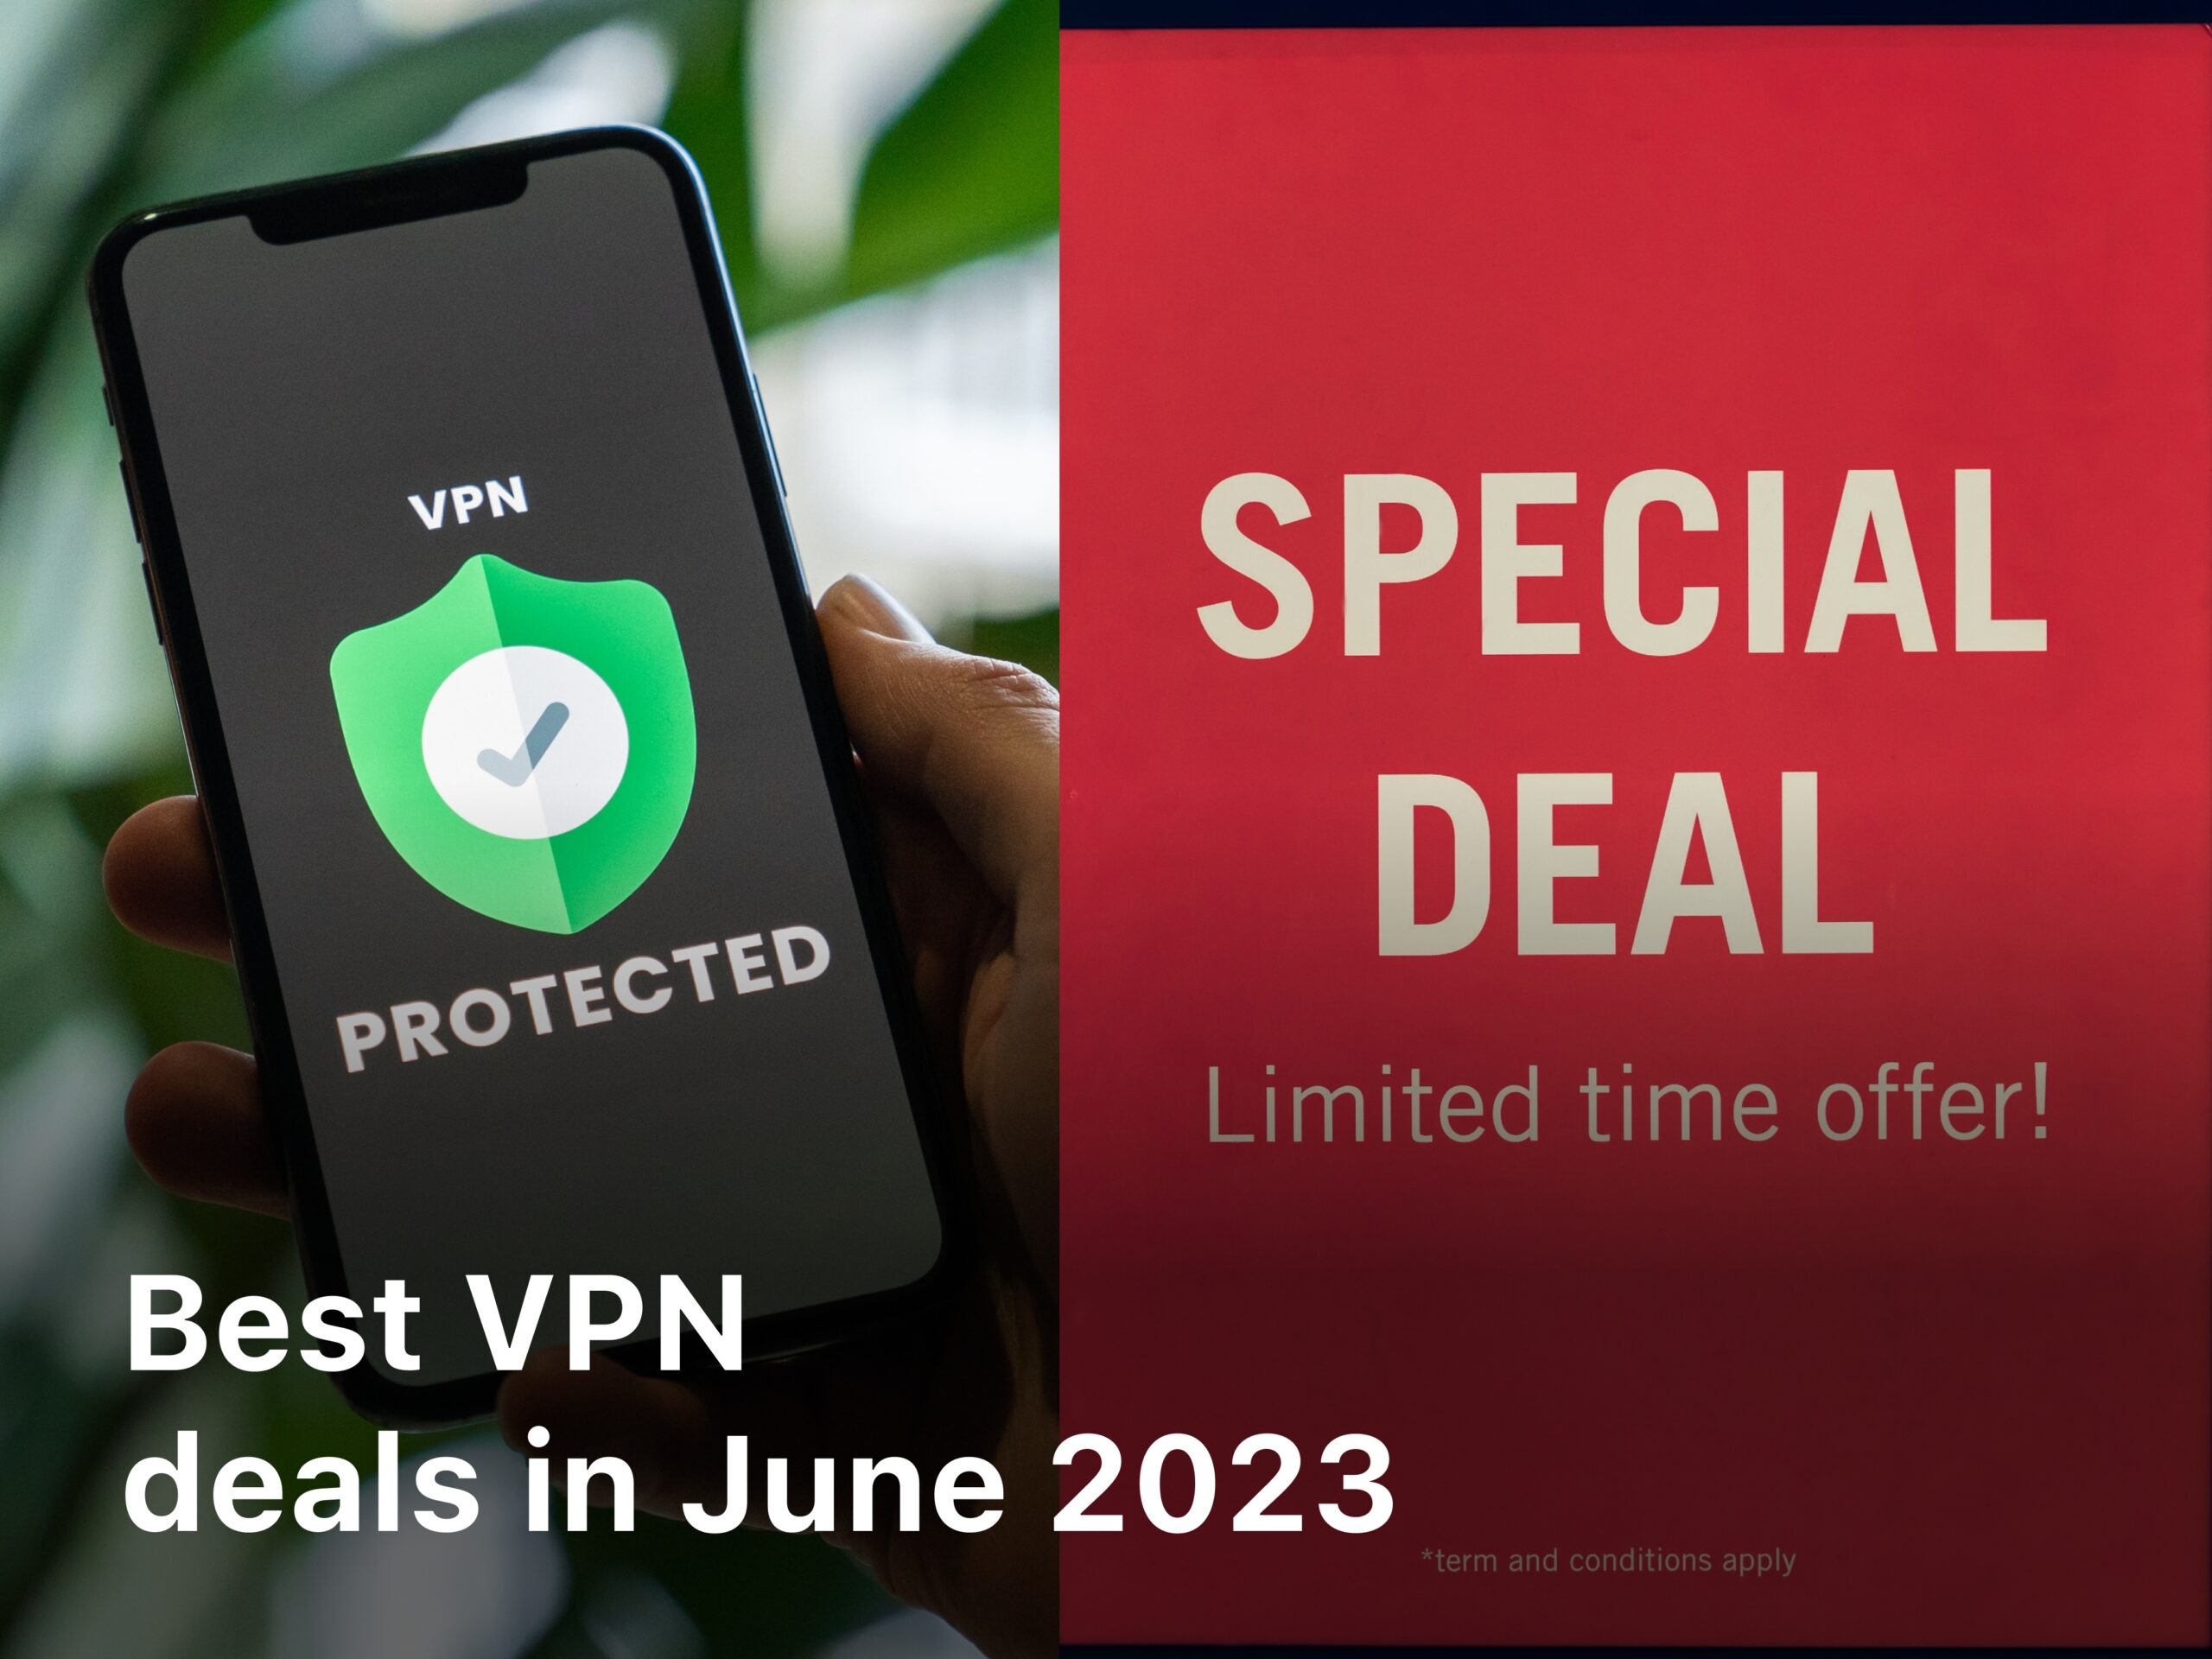 Best VPN deals in June